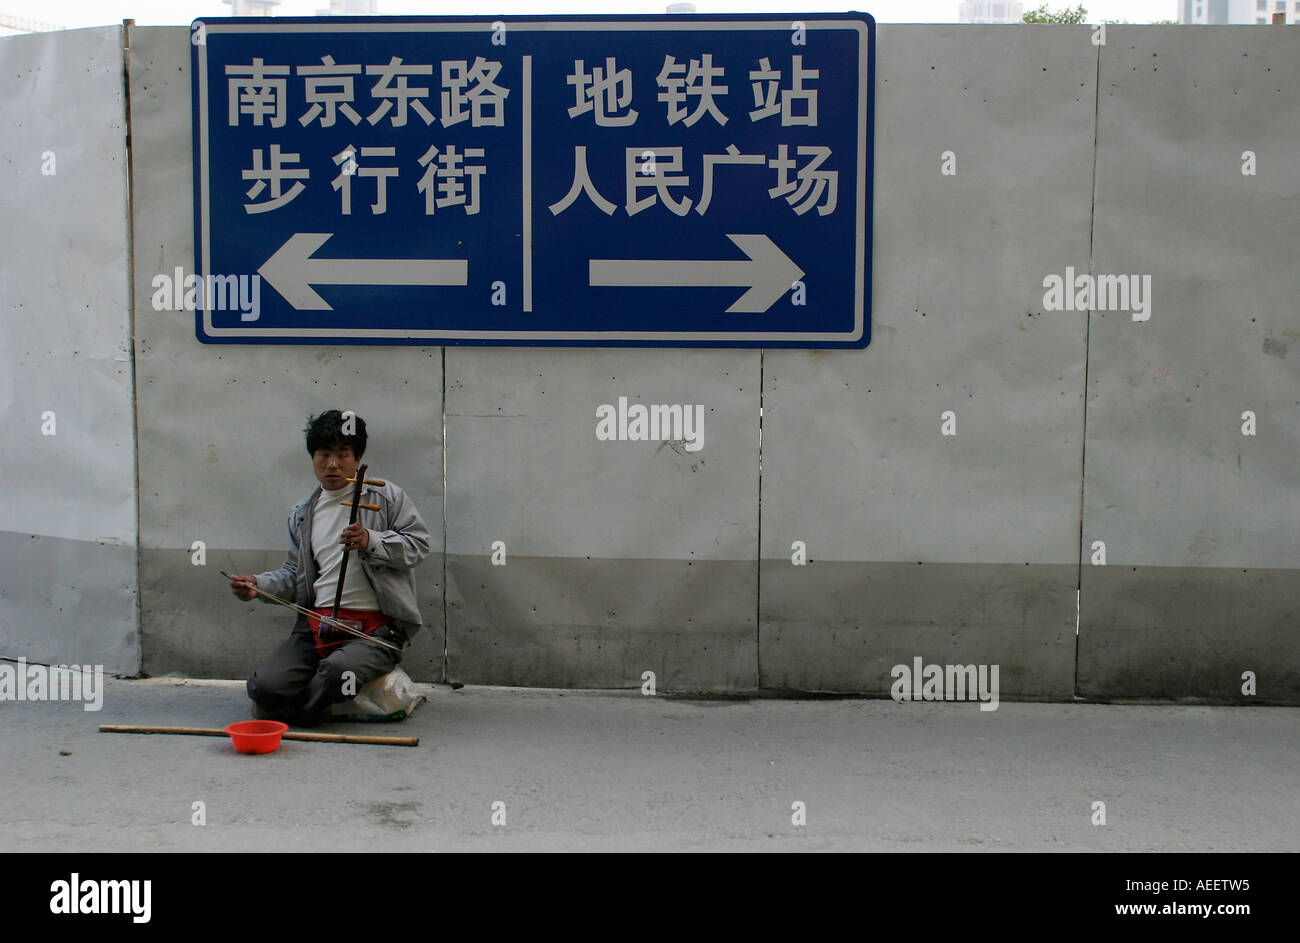 Shanghai in Cina un suonatore ambulante cieco svolge un tradizionale a due corde huquin cinese su un percorso temporaneo durante i lavori di costruzione Foto Stock